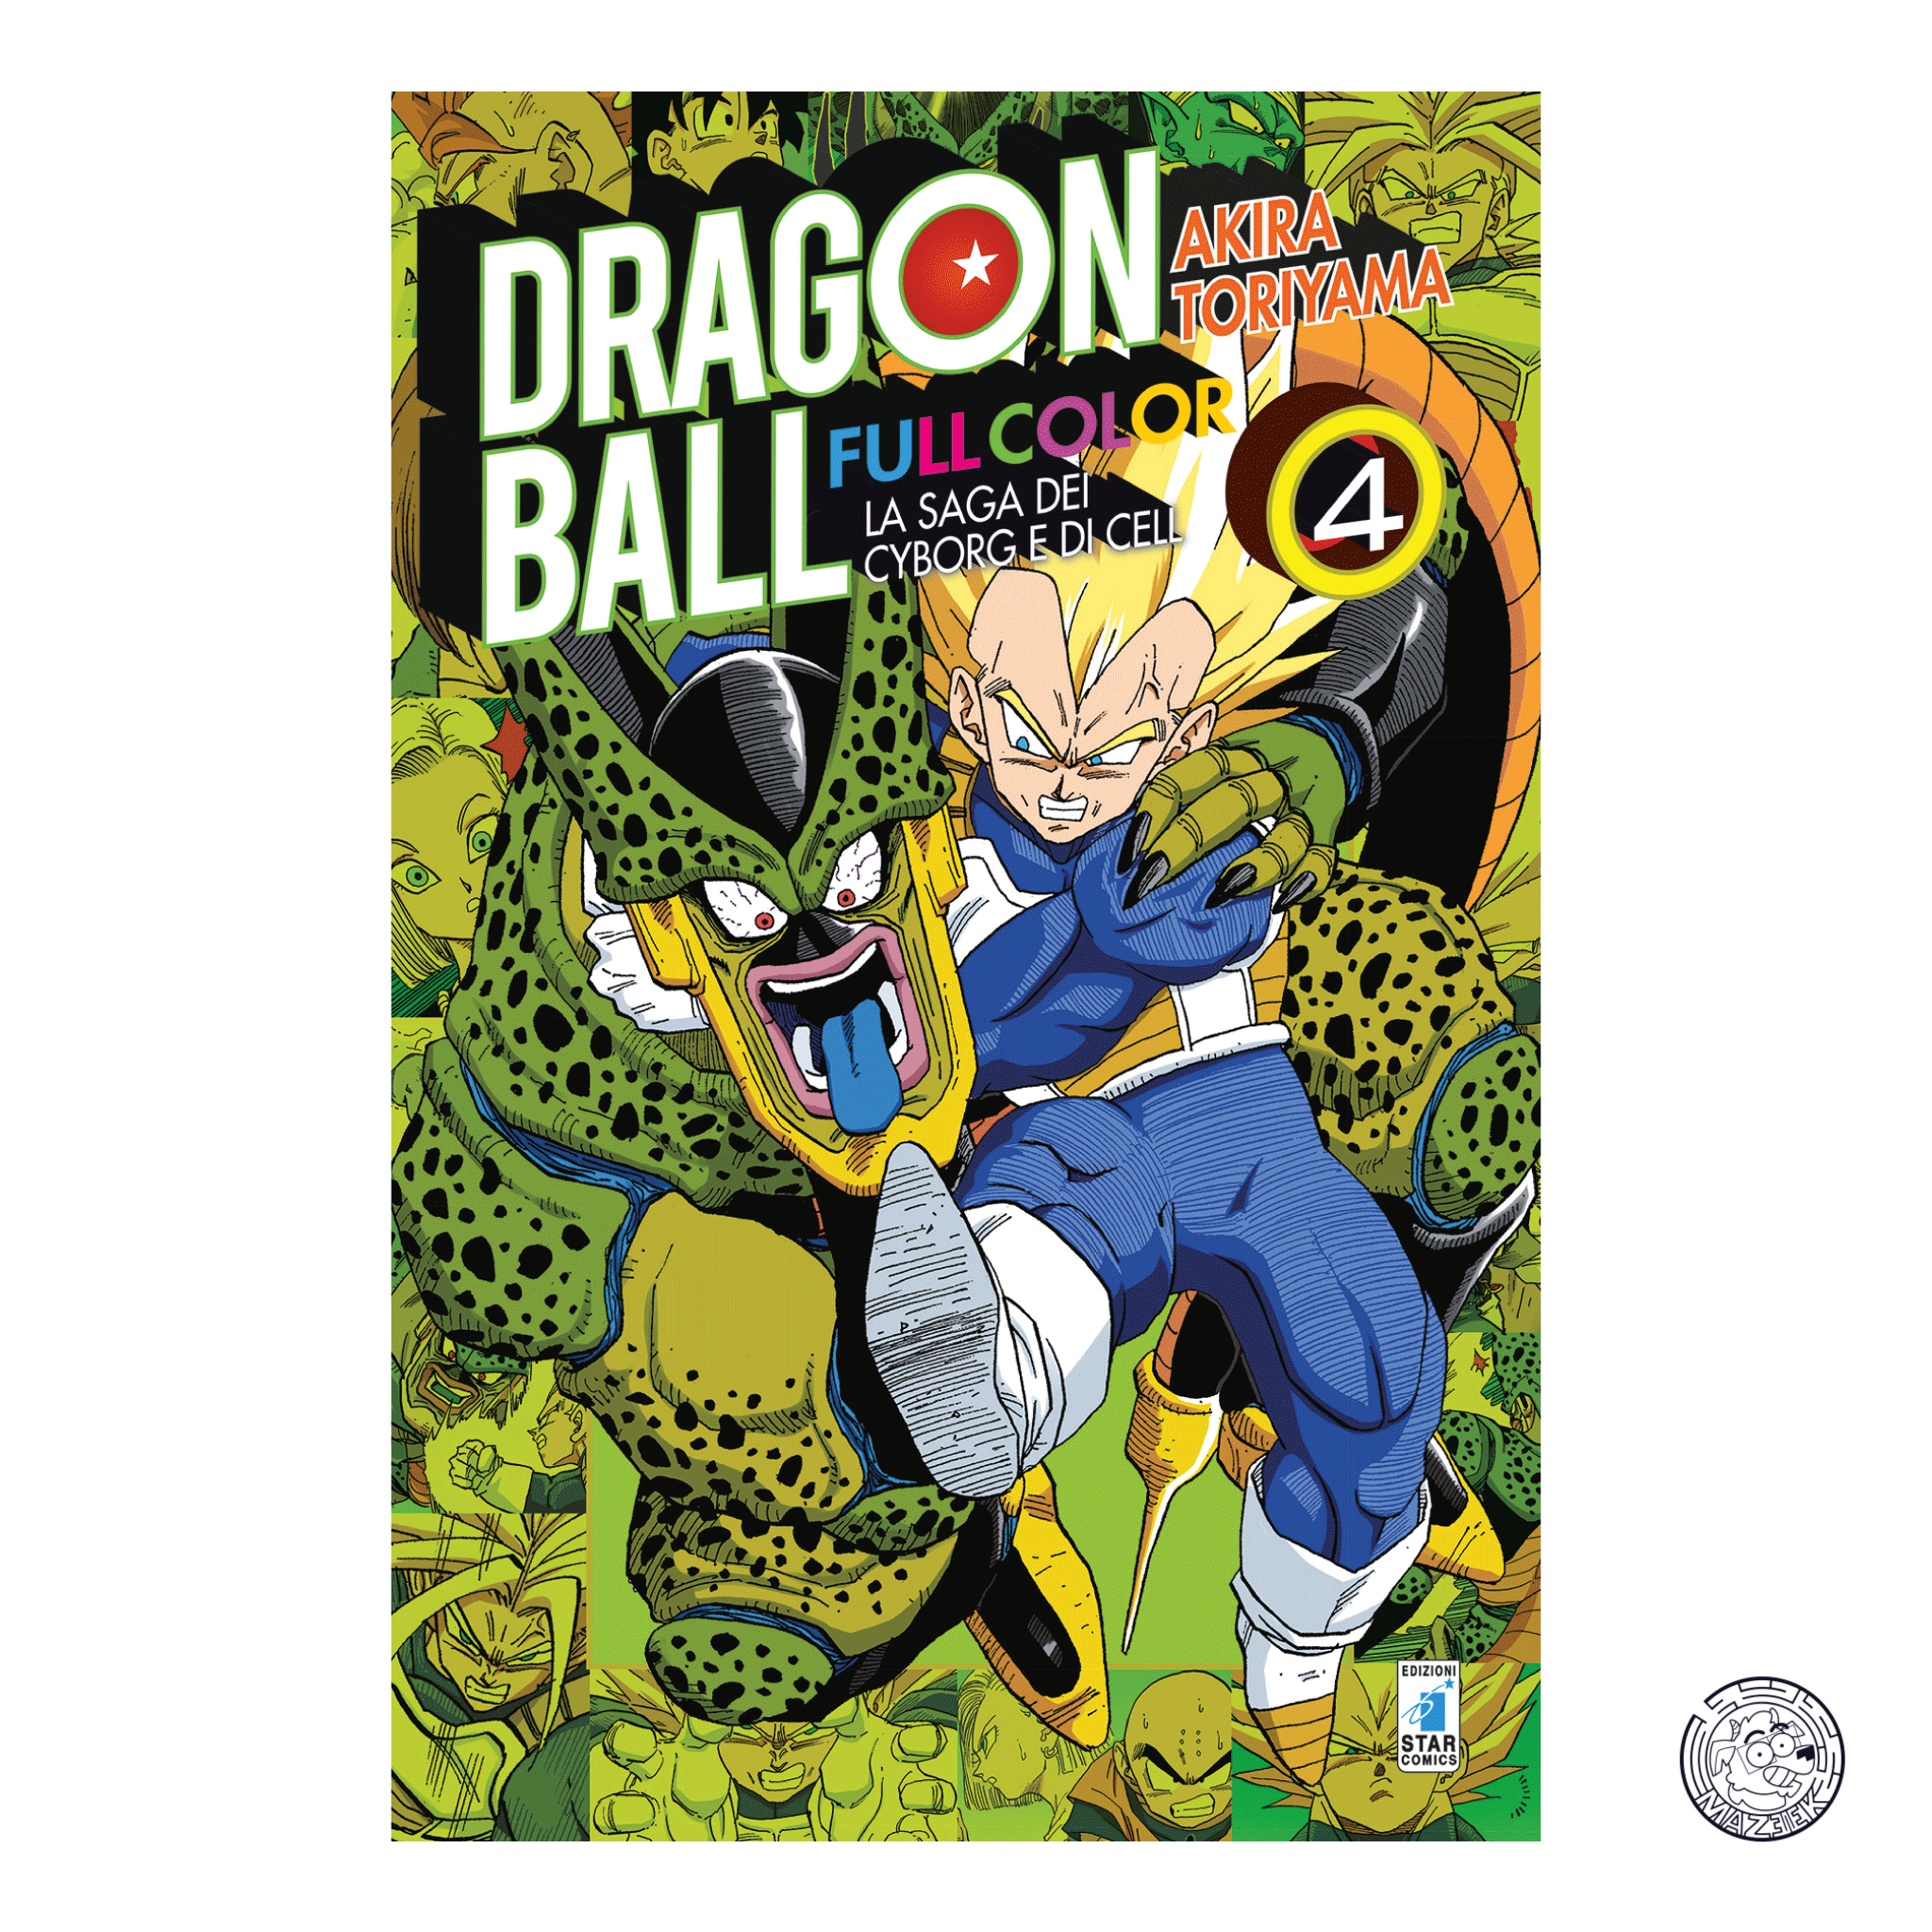 Dragon Ball Full Color 24: La Saga dei Cyborg e di Cell 4